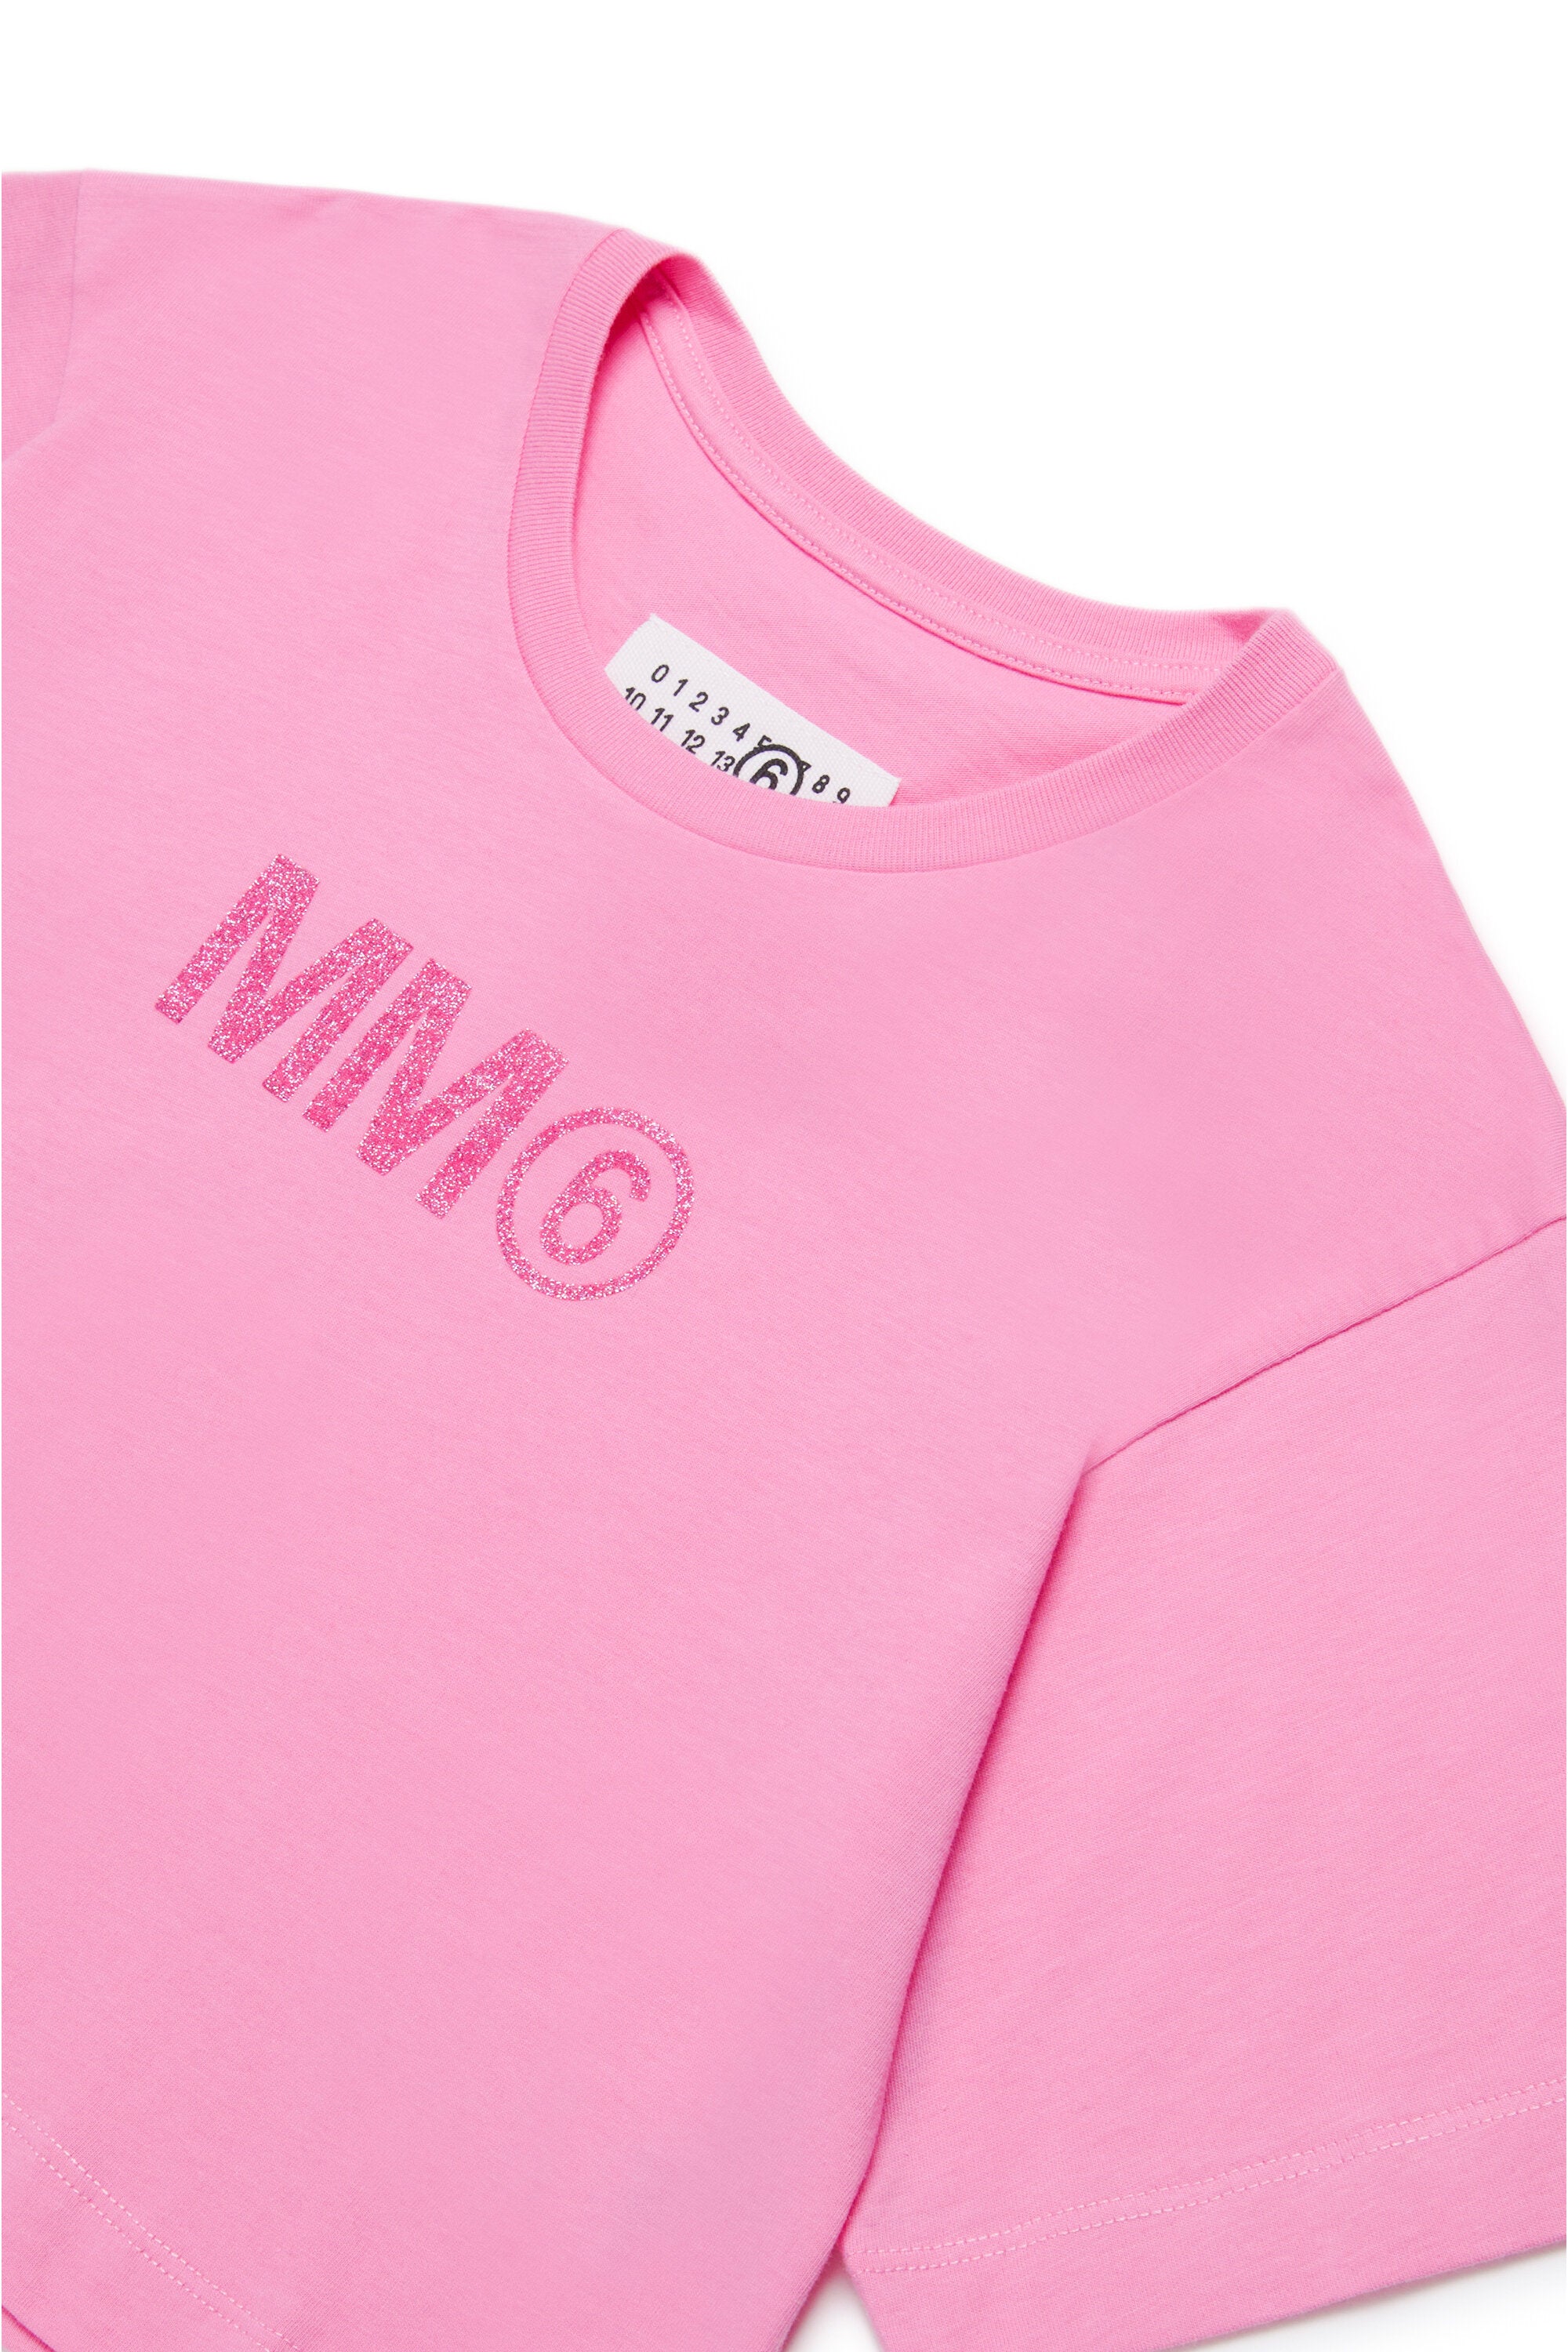 T-shirt cropped con logo MM6 glitterato